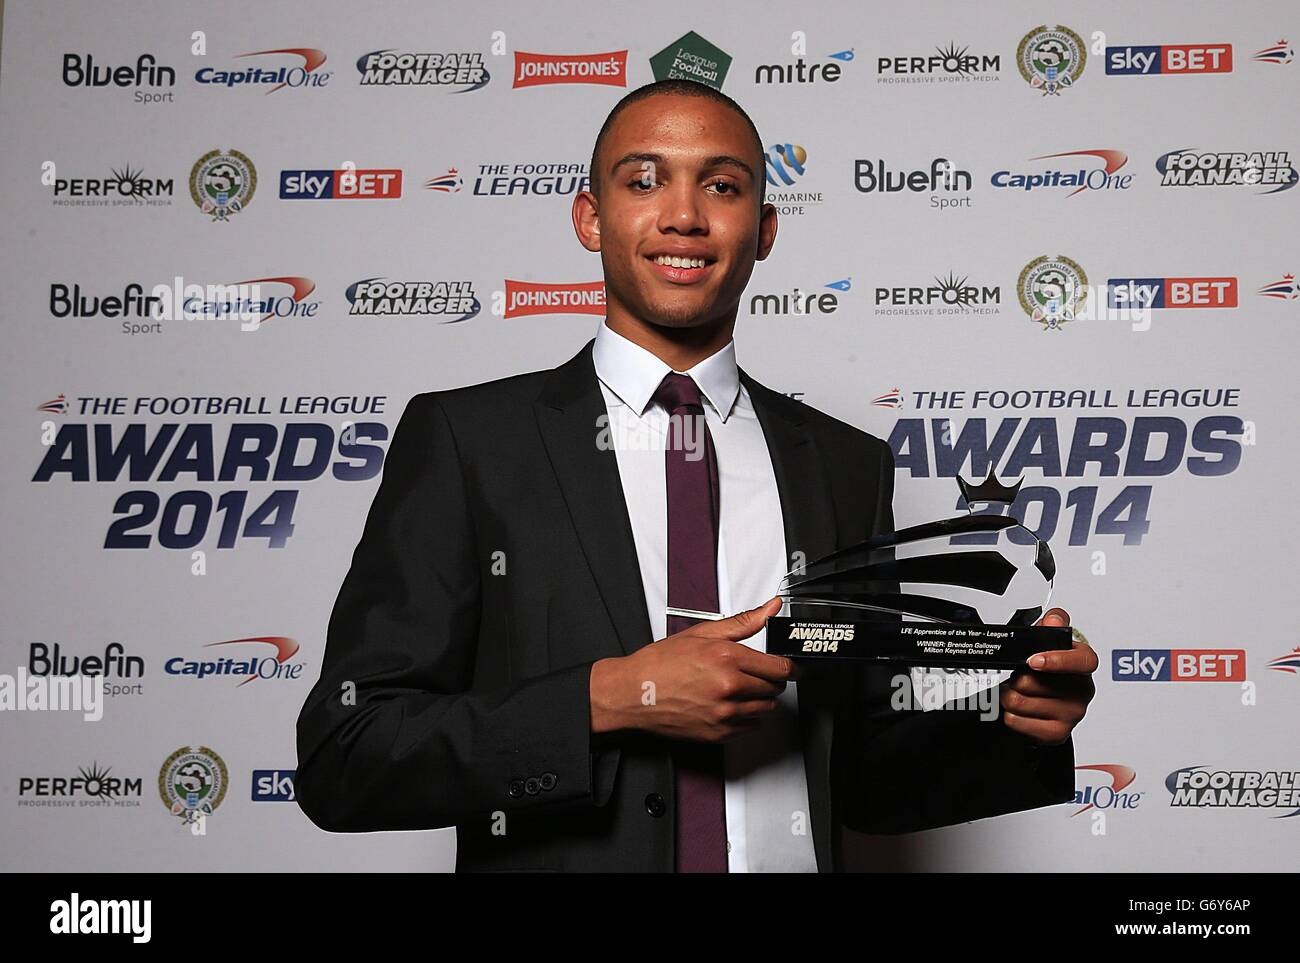 Fútbol - Premios de la Liga de Fútbol 2014 - The Brewery - Londres. Premio de la Liga 1 en los Premios de la Liga de Fútbol 2014 Foto de stock